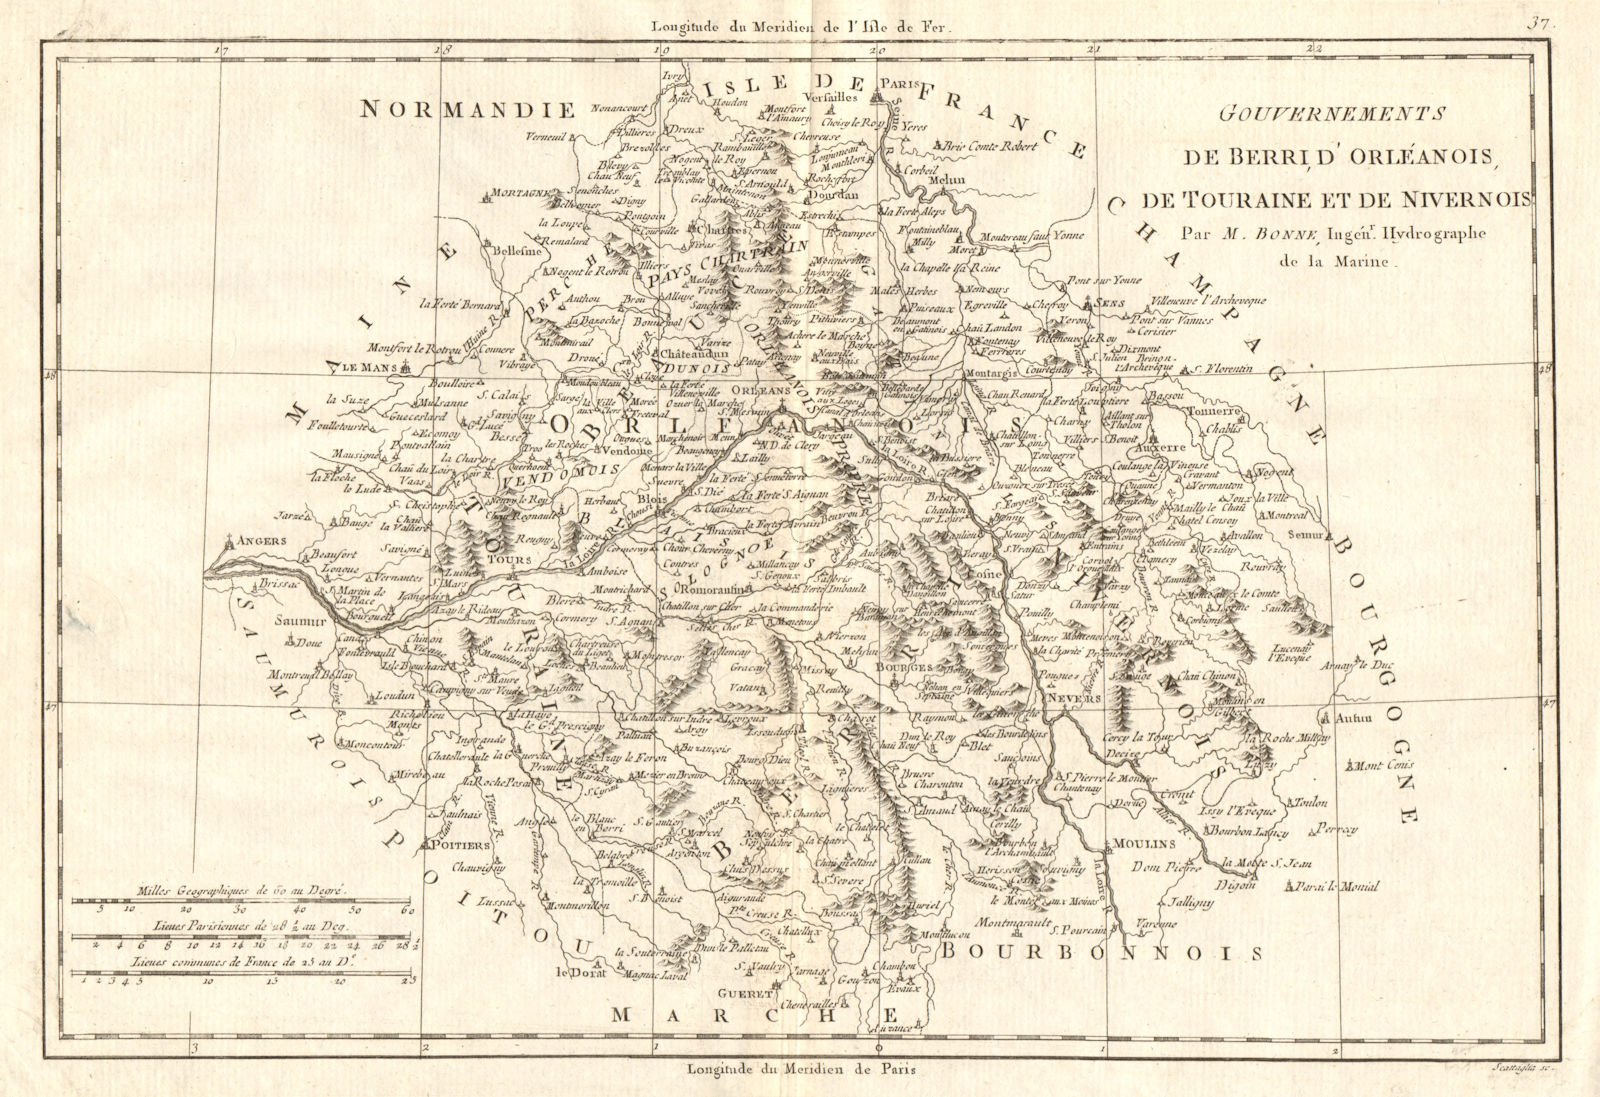 Associate Product Gouvernements de Berri, d’Orléanois, de Touraine et de Nivernois. BONNE 1789 map